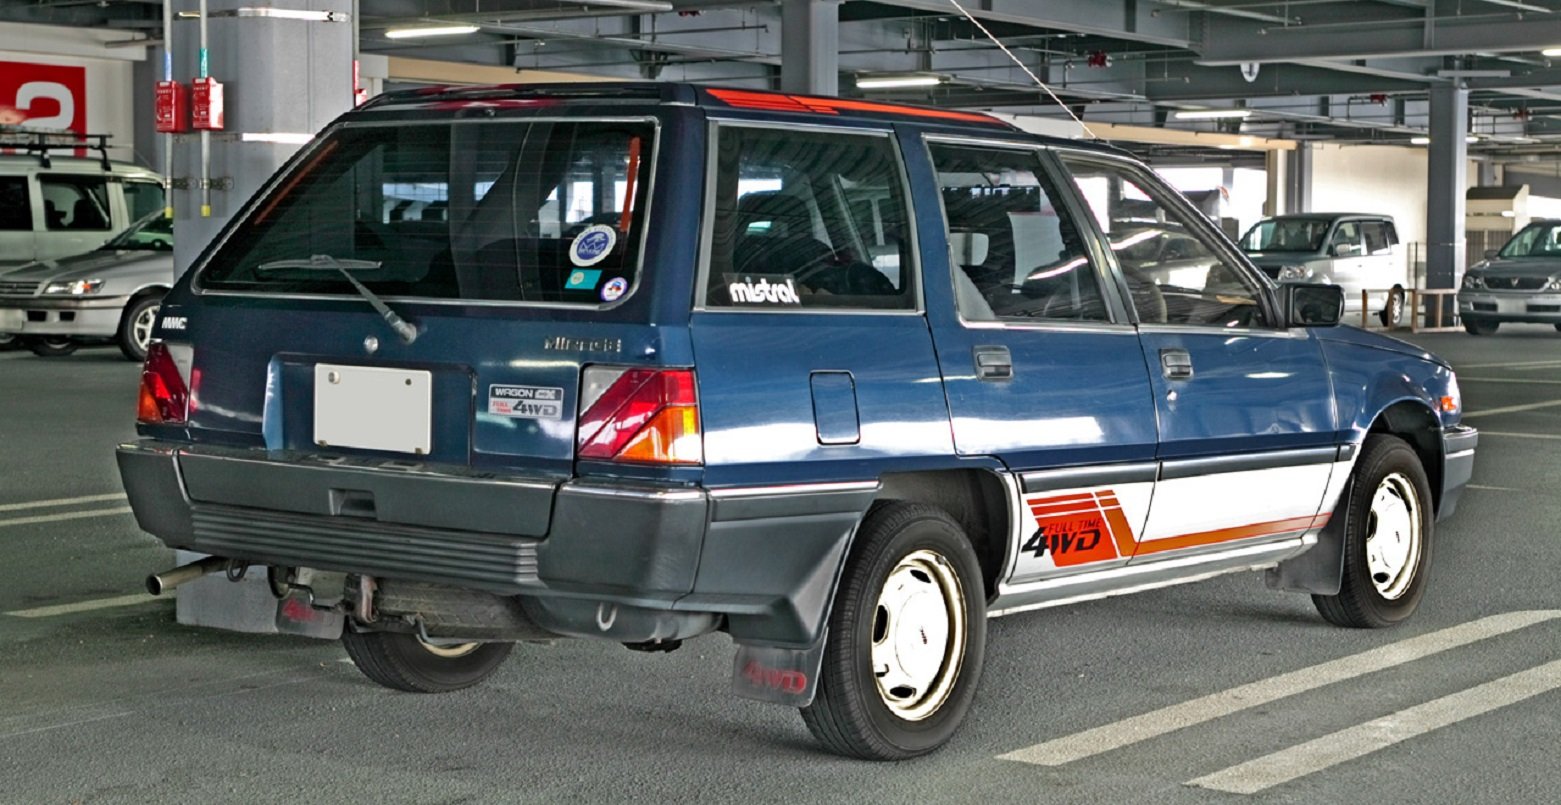 4 вд универсал. Mitsubishi Mirage 1990 универсал. Митсубиси Лансер вагон 1990. Mitsubishi Wagon 1990. Mitsubishi Mirage 1985 универсал.